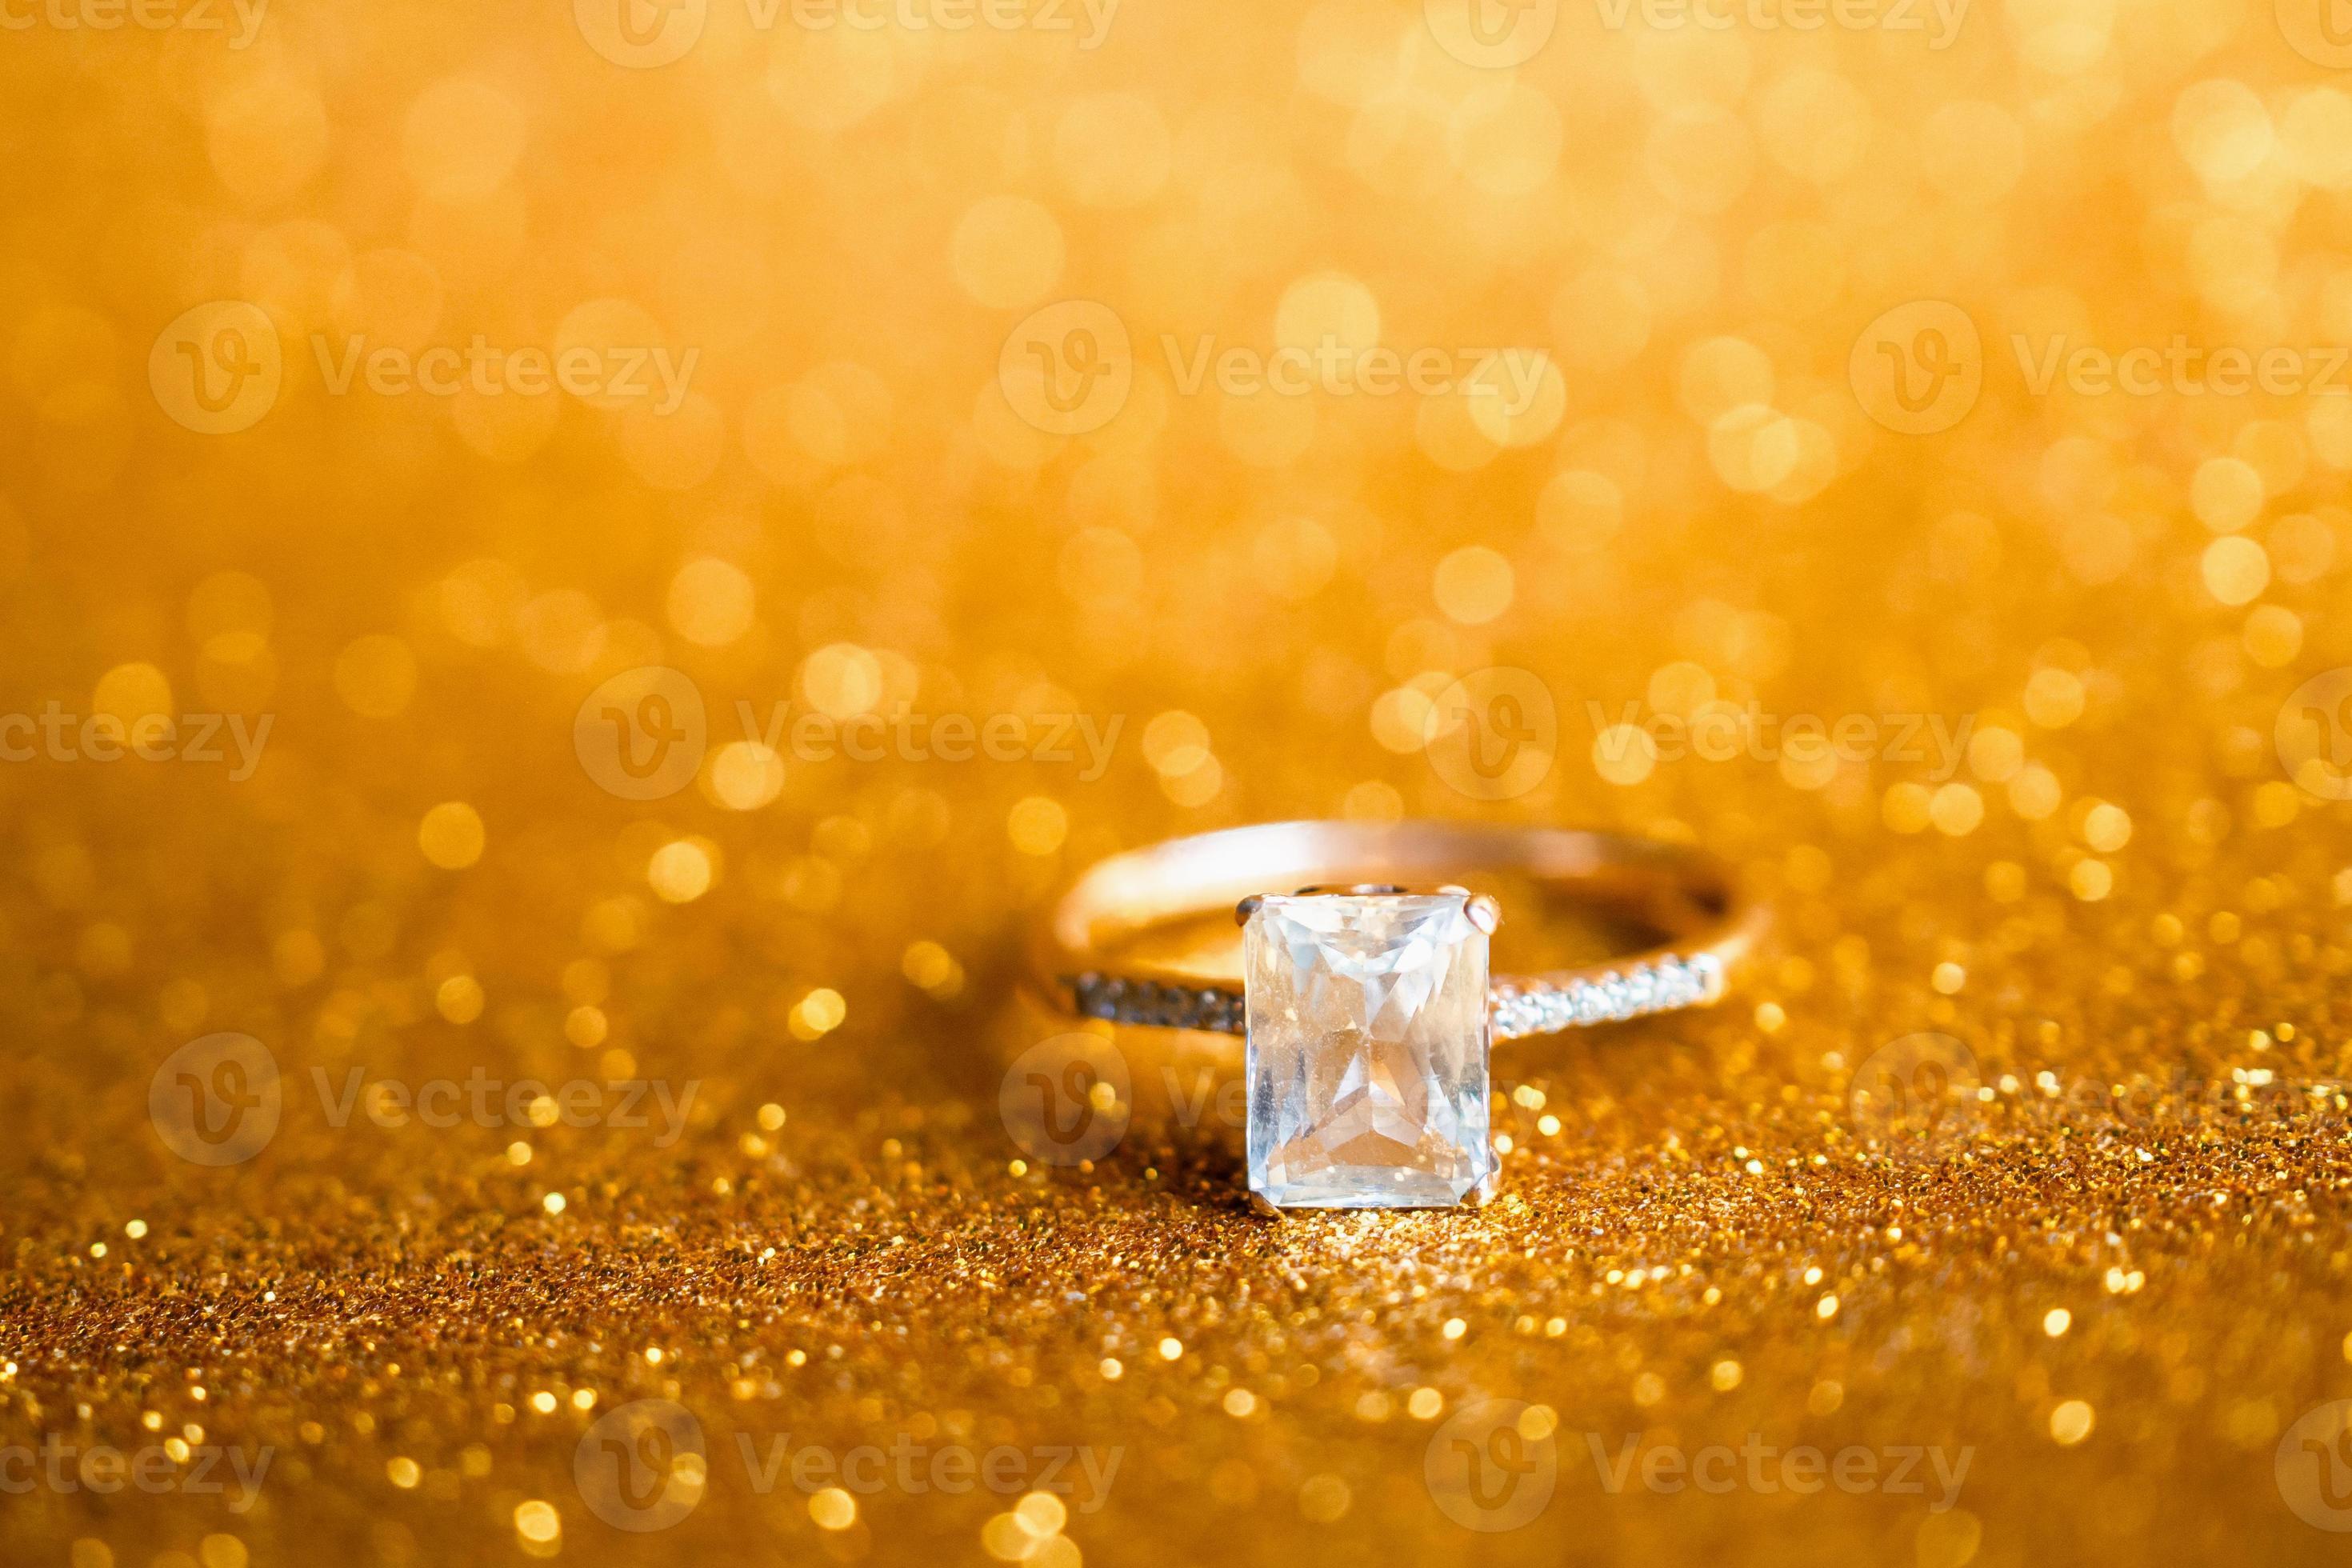 Nhẫn kim cương là biểu tượng cho tình yêu và sự sang trọng. Hình ảnh liên quan đến nhẫn kim cương sẽ đưa bạn đến với thế giới của những viên kim cương rực rỡ và thướt tha những cung đường tình yêu lãng mạn.